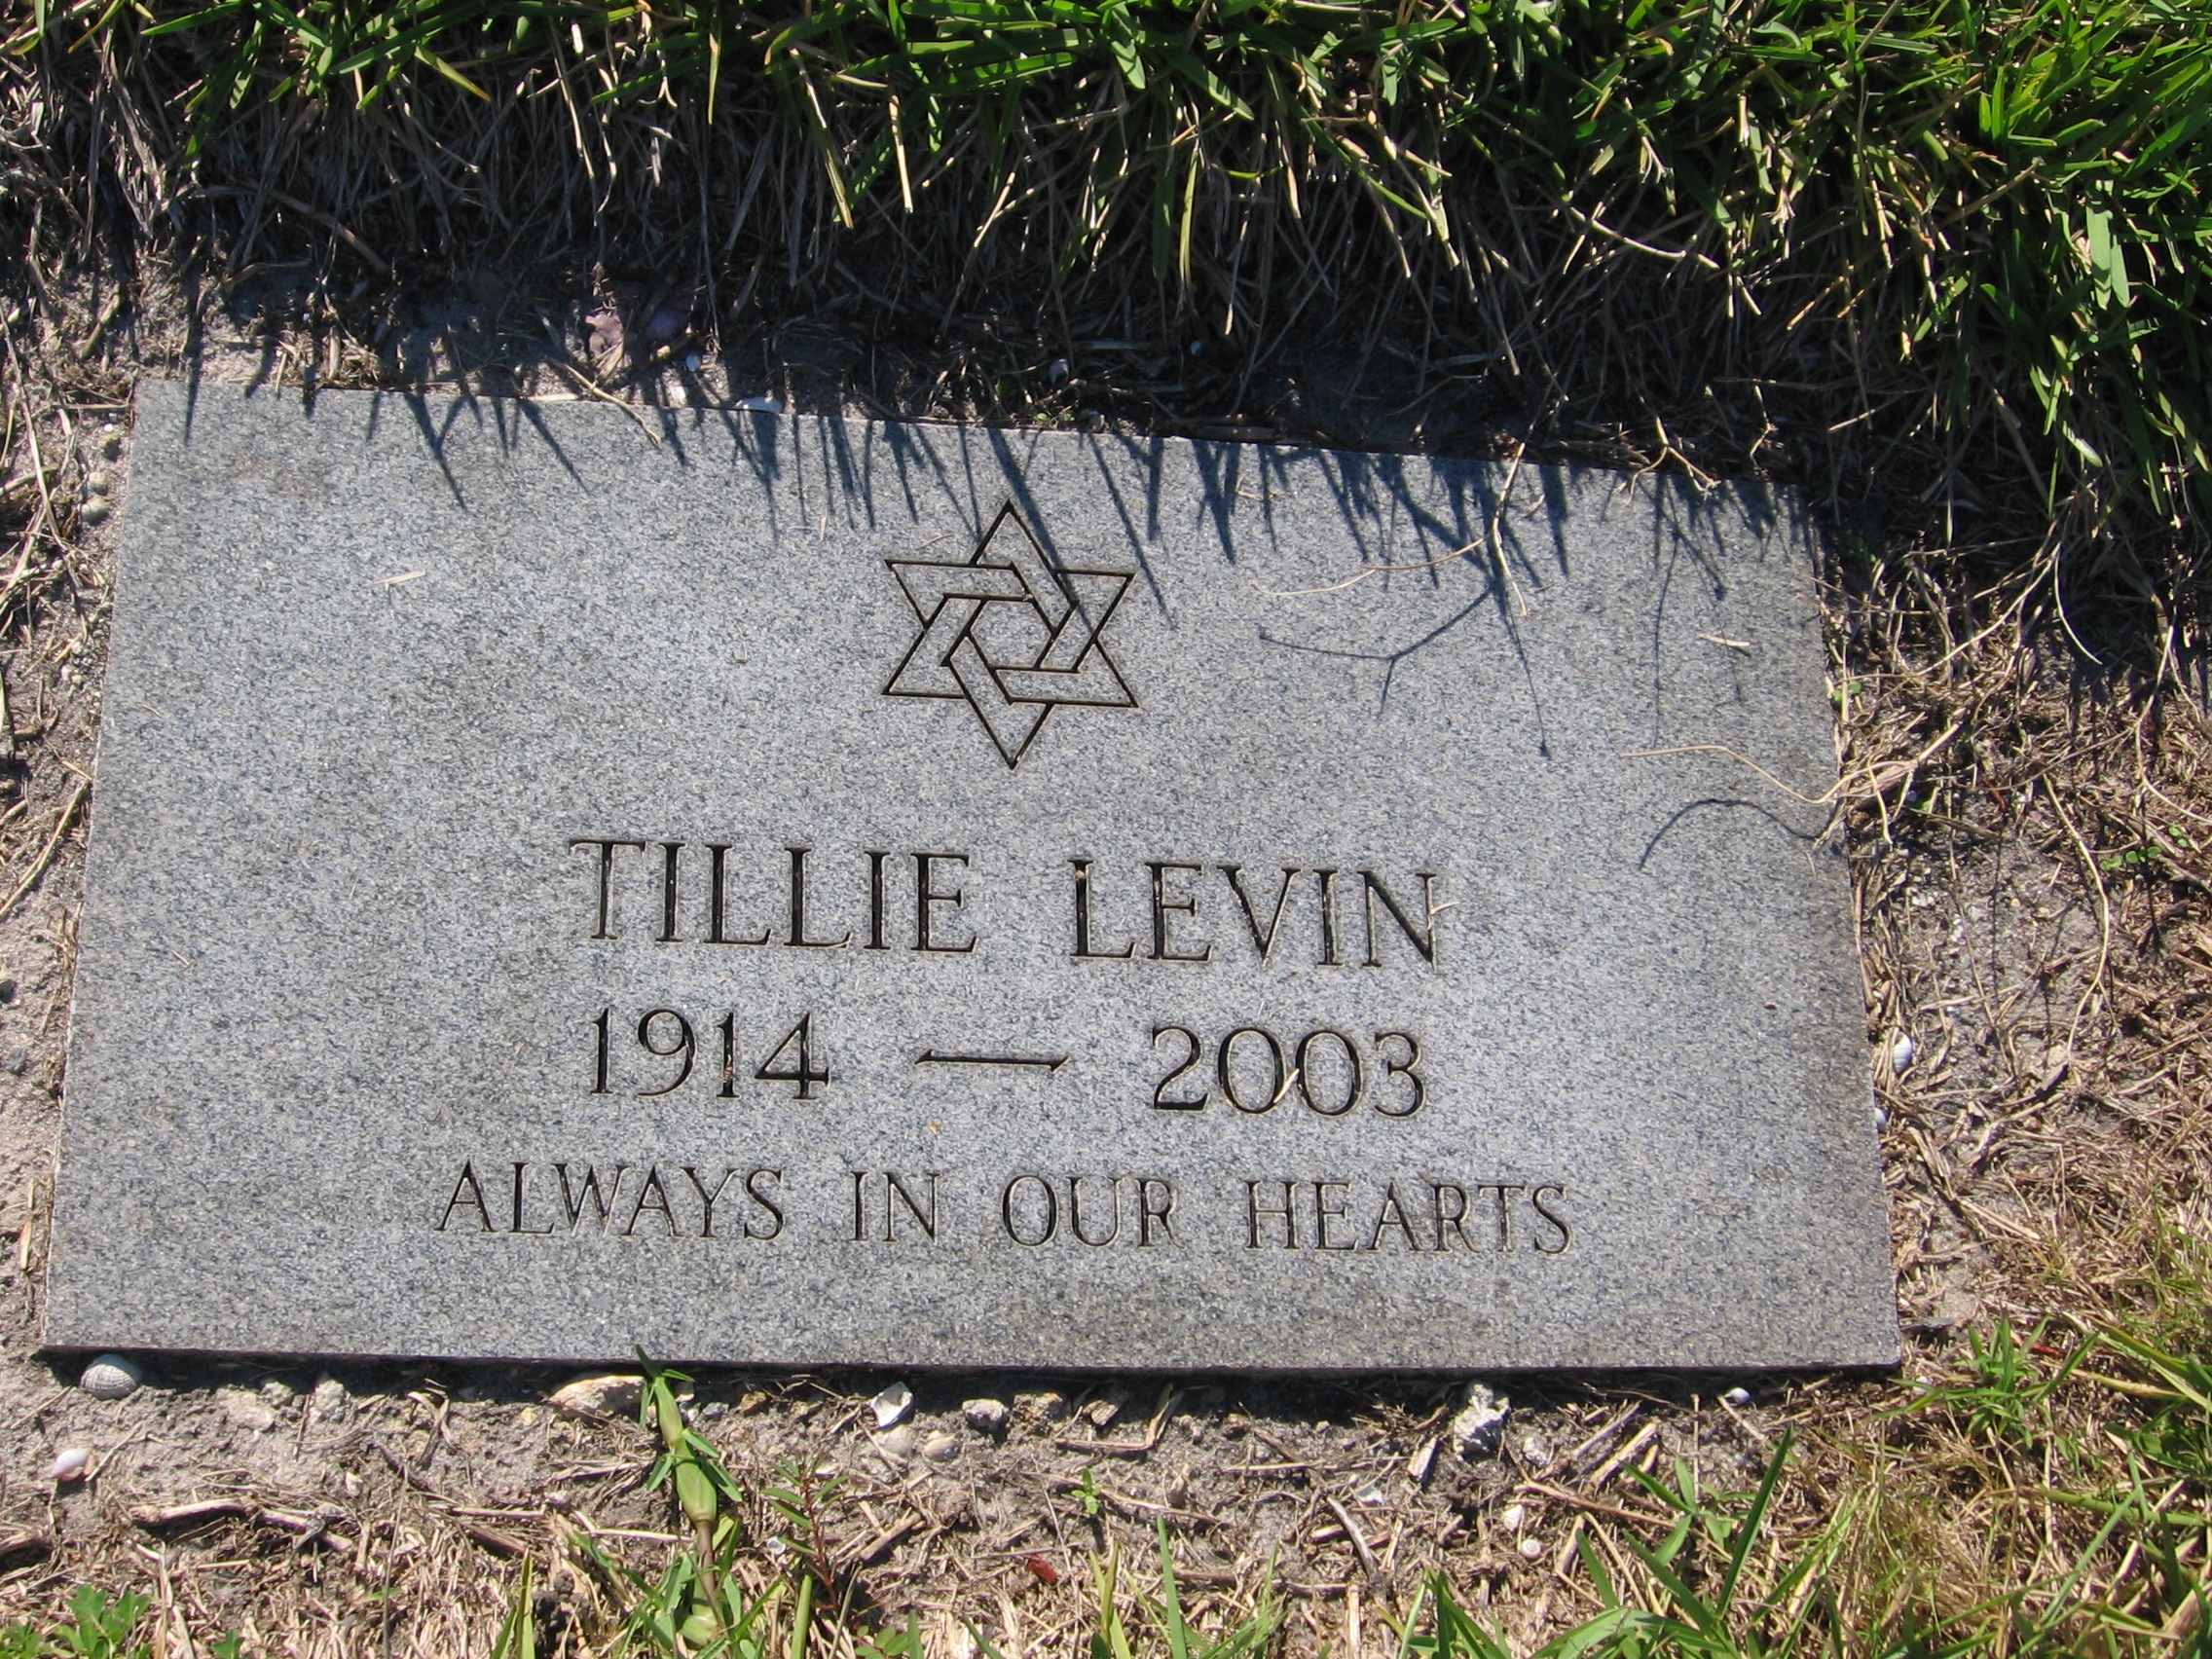 Tillie Levin